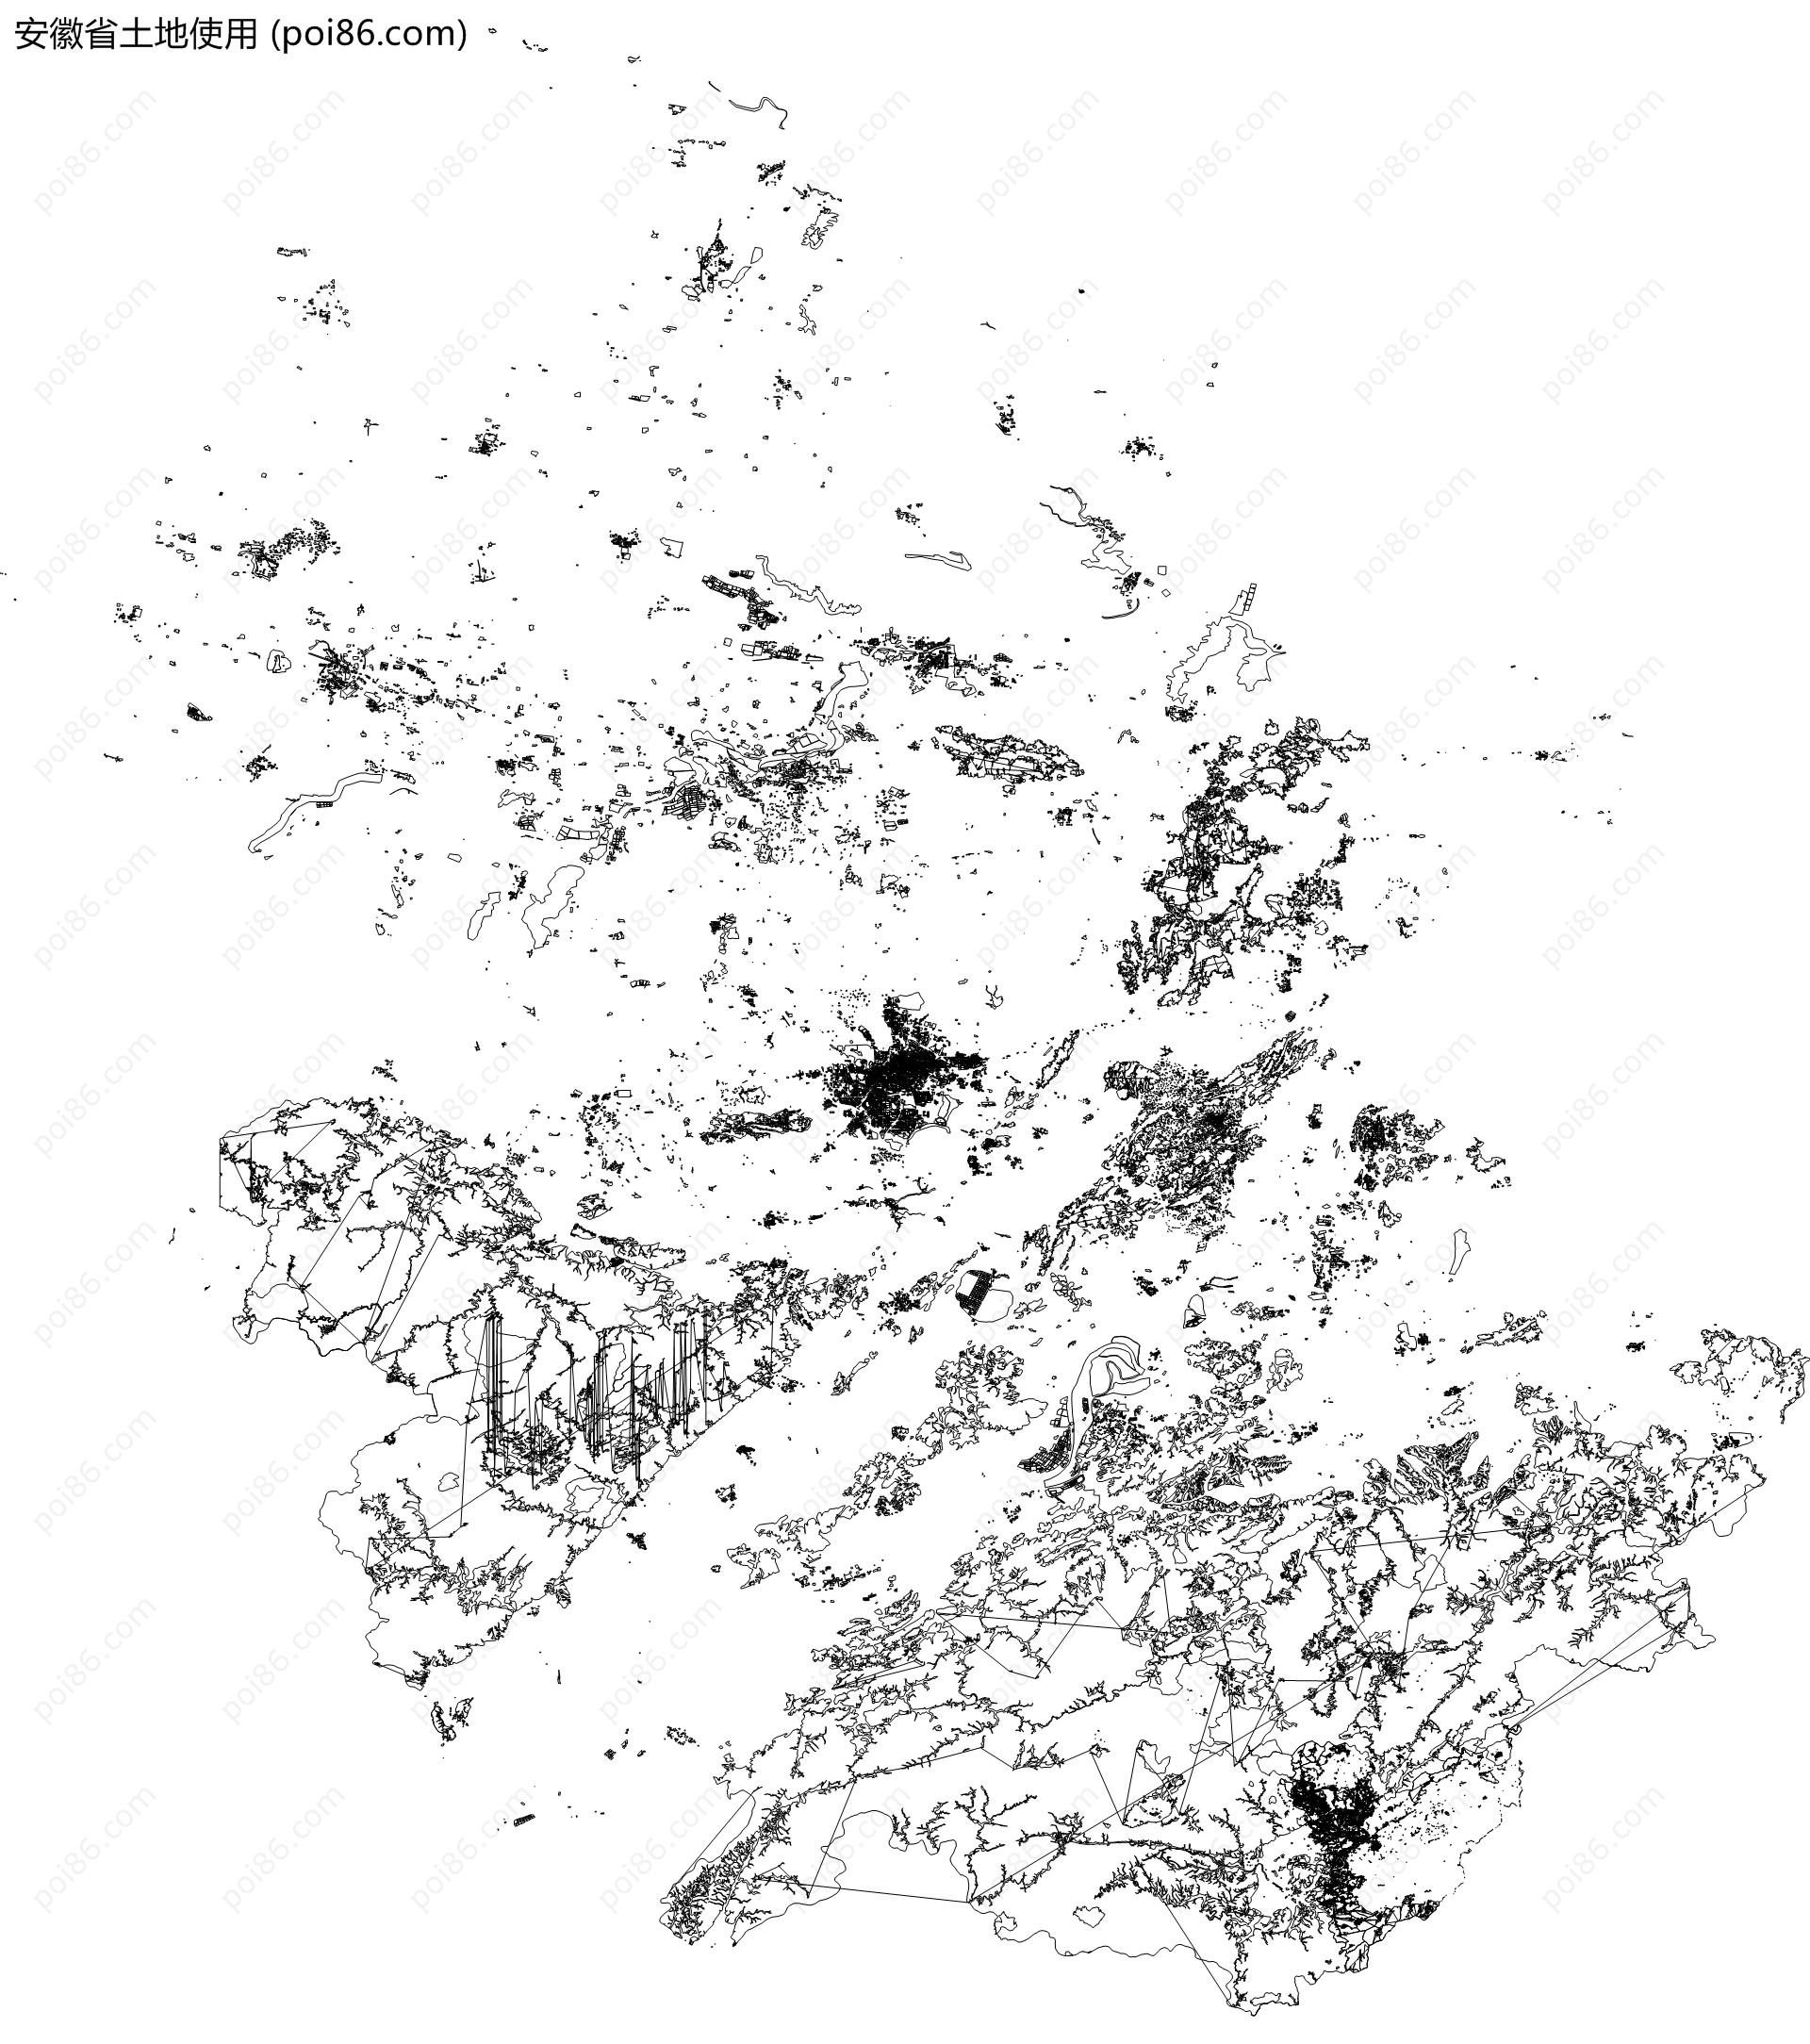 安徽省土地使用地图